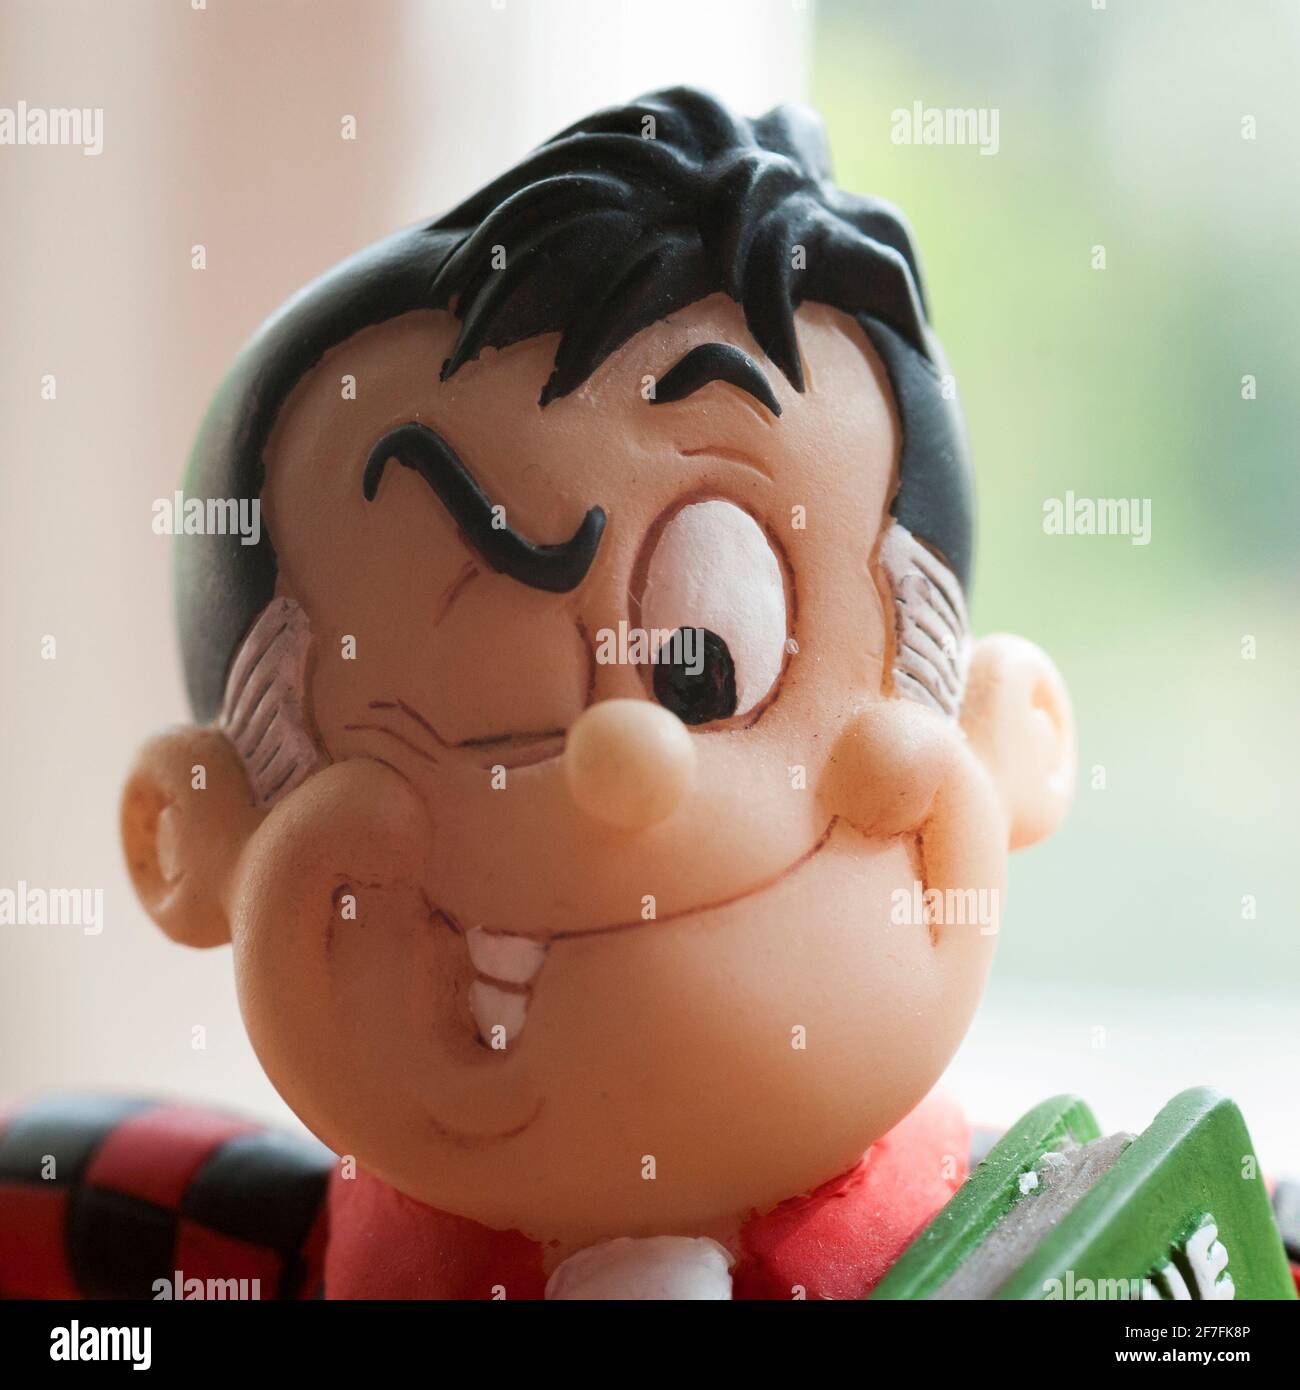 Eine Nahaufnahme des Kopfes einer kleinen Figur von Roger dem Dodger, einer Figur aus dem DC Thomson Comic, The Beano. Stockfoto